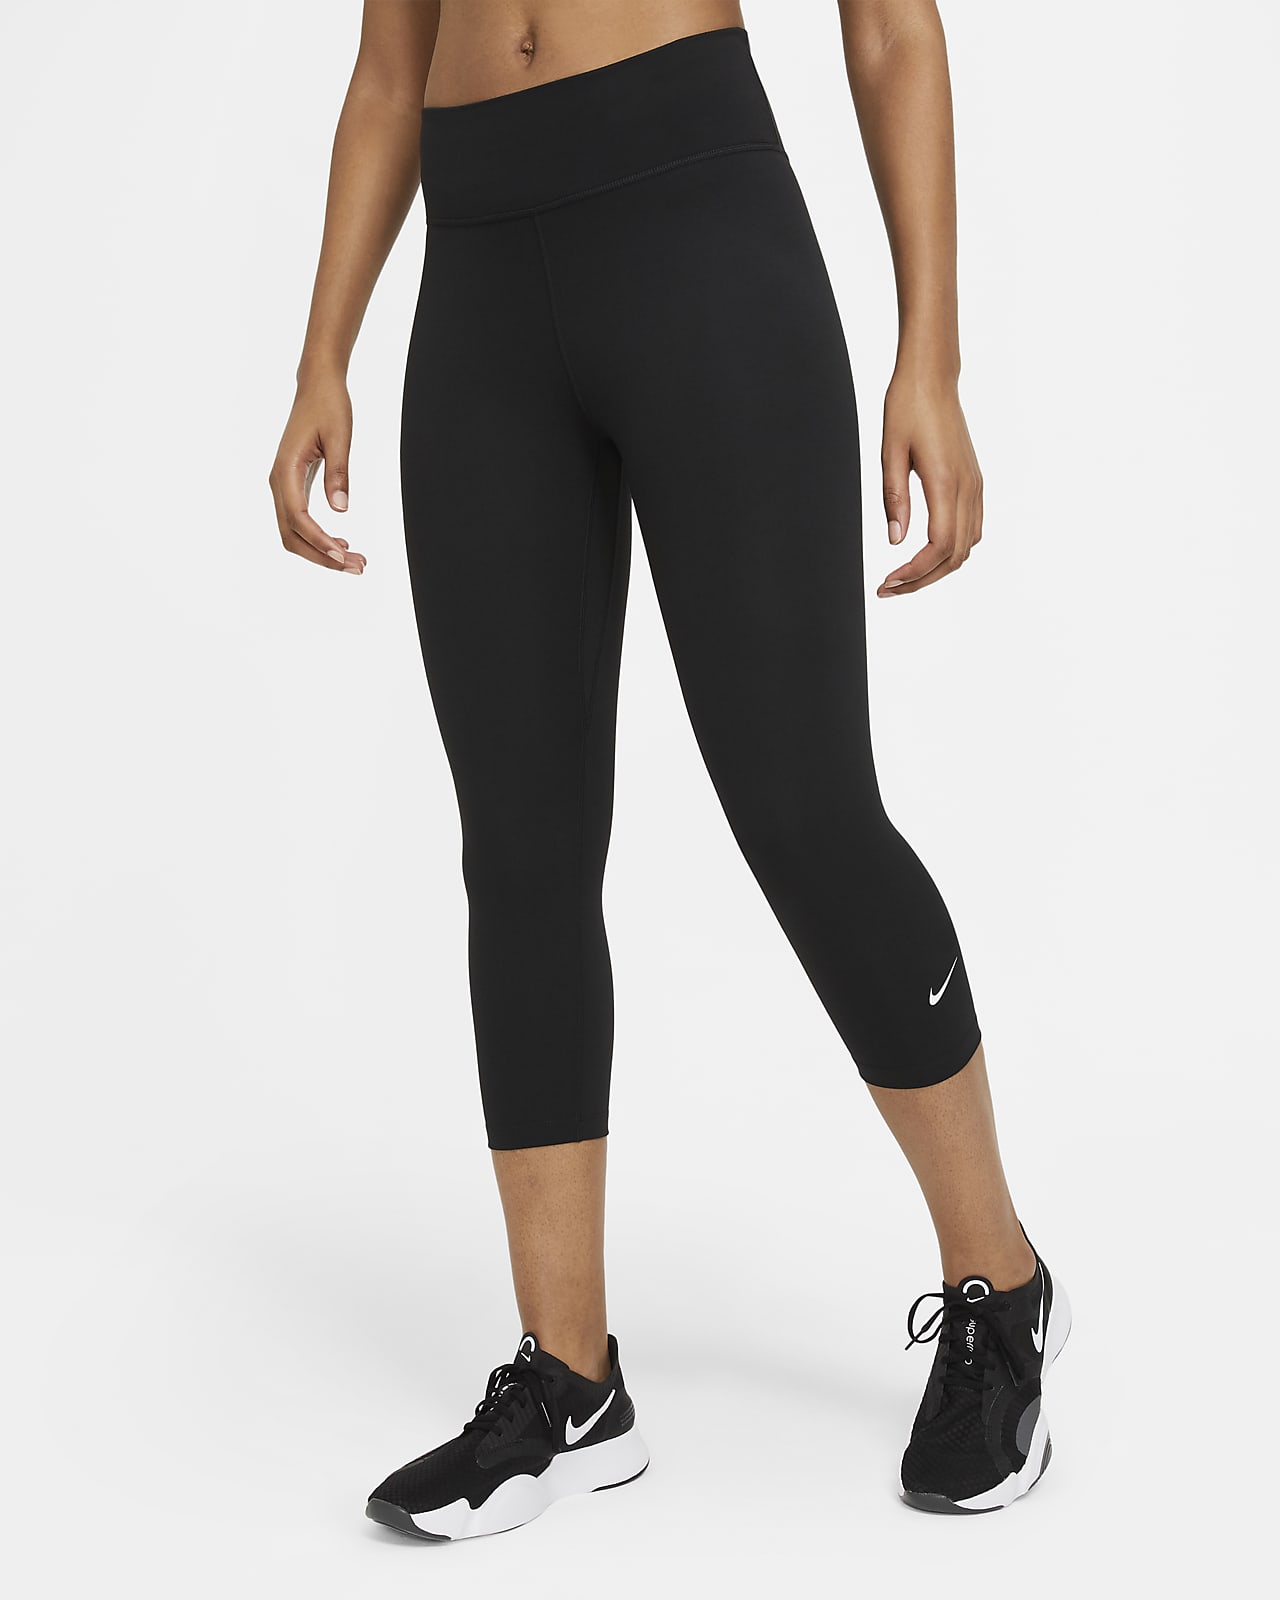 Damskie legginsy typu capri ze średnim stanem Nike One